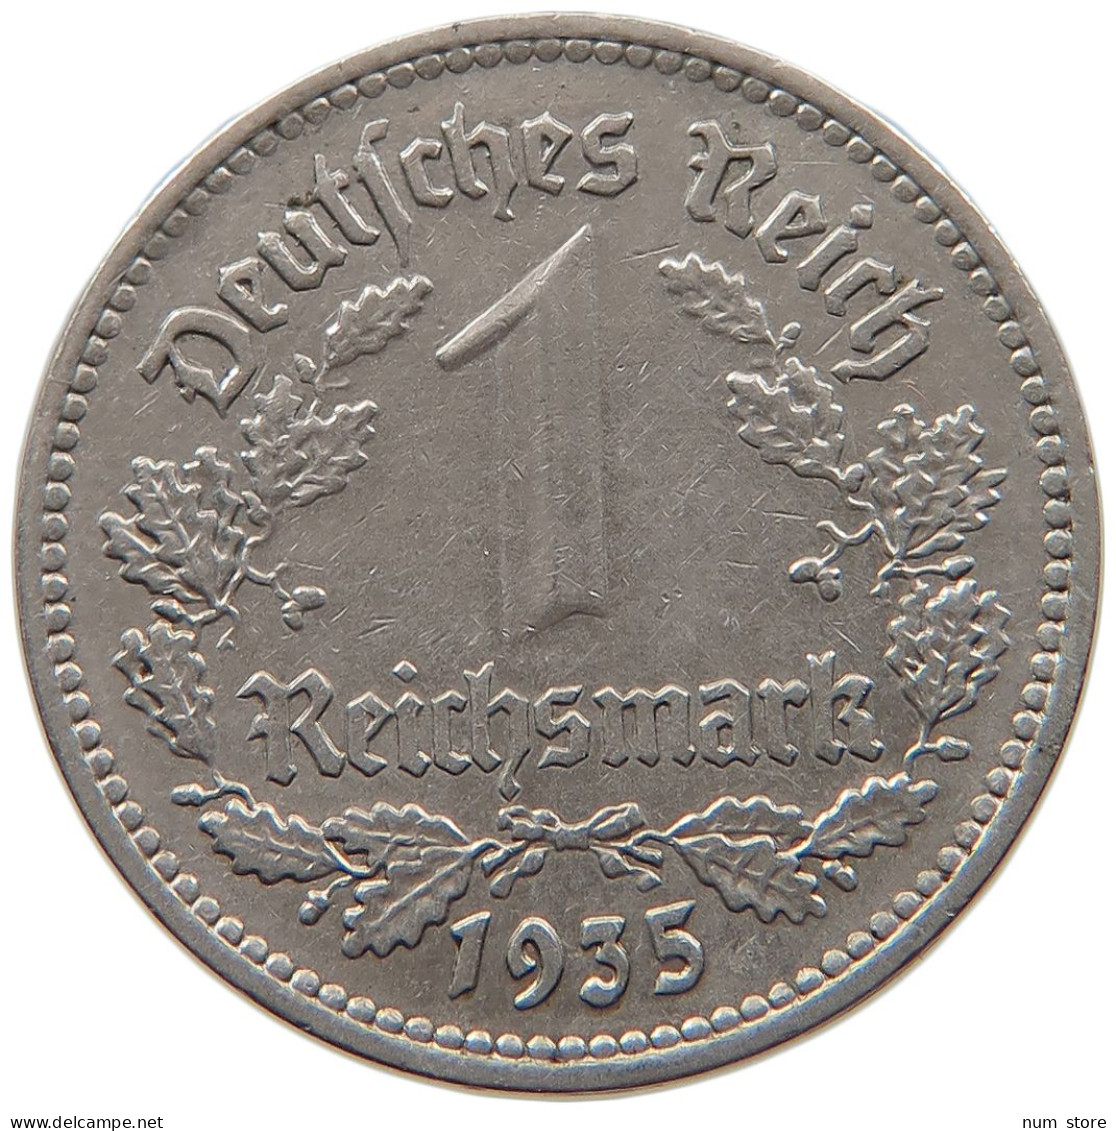 DRITTES REICH MARK 1935 A  #MA 099359 - 1 Reichsmark